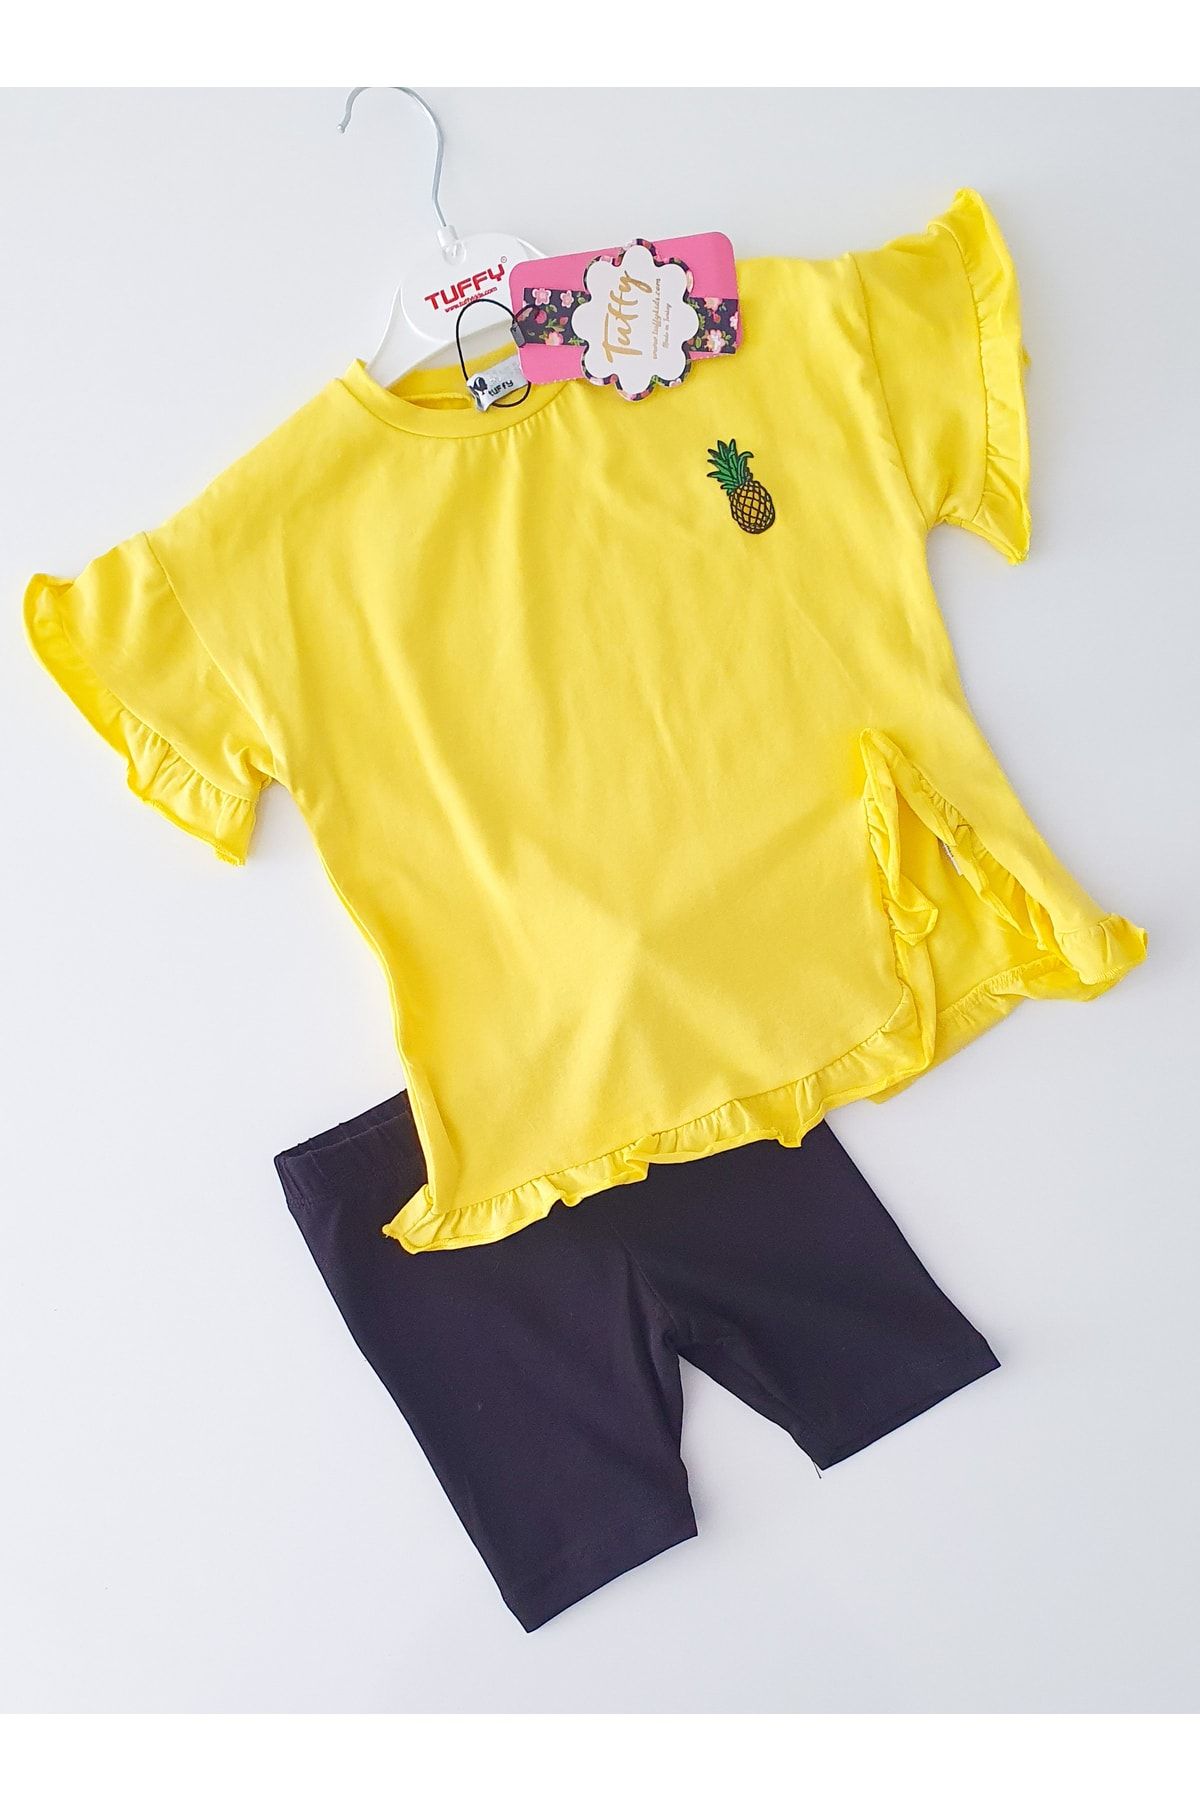 Tuffy Kids Ananas Baskılı Tişört Tayt Kız Çocuk Takımı